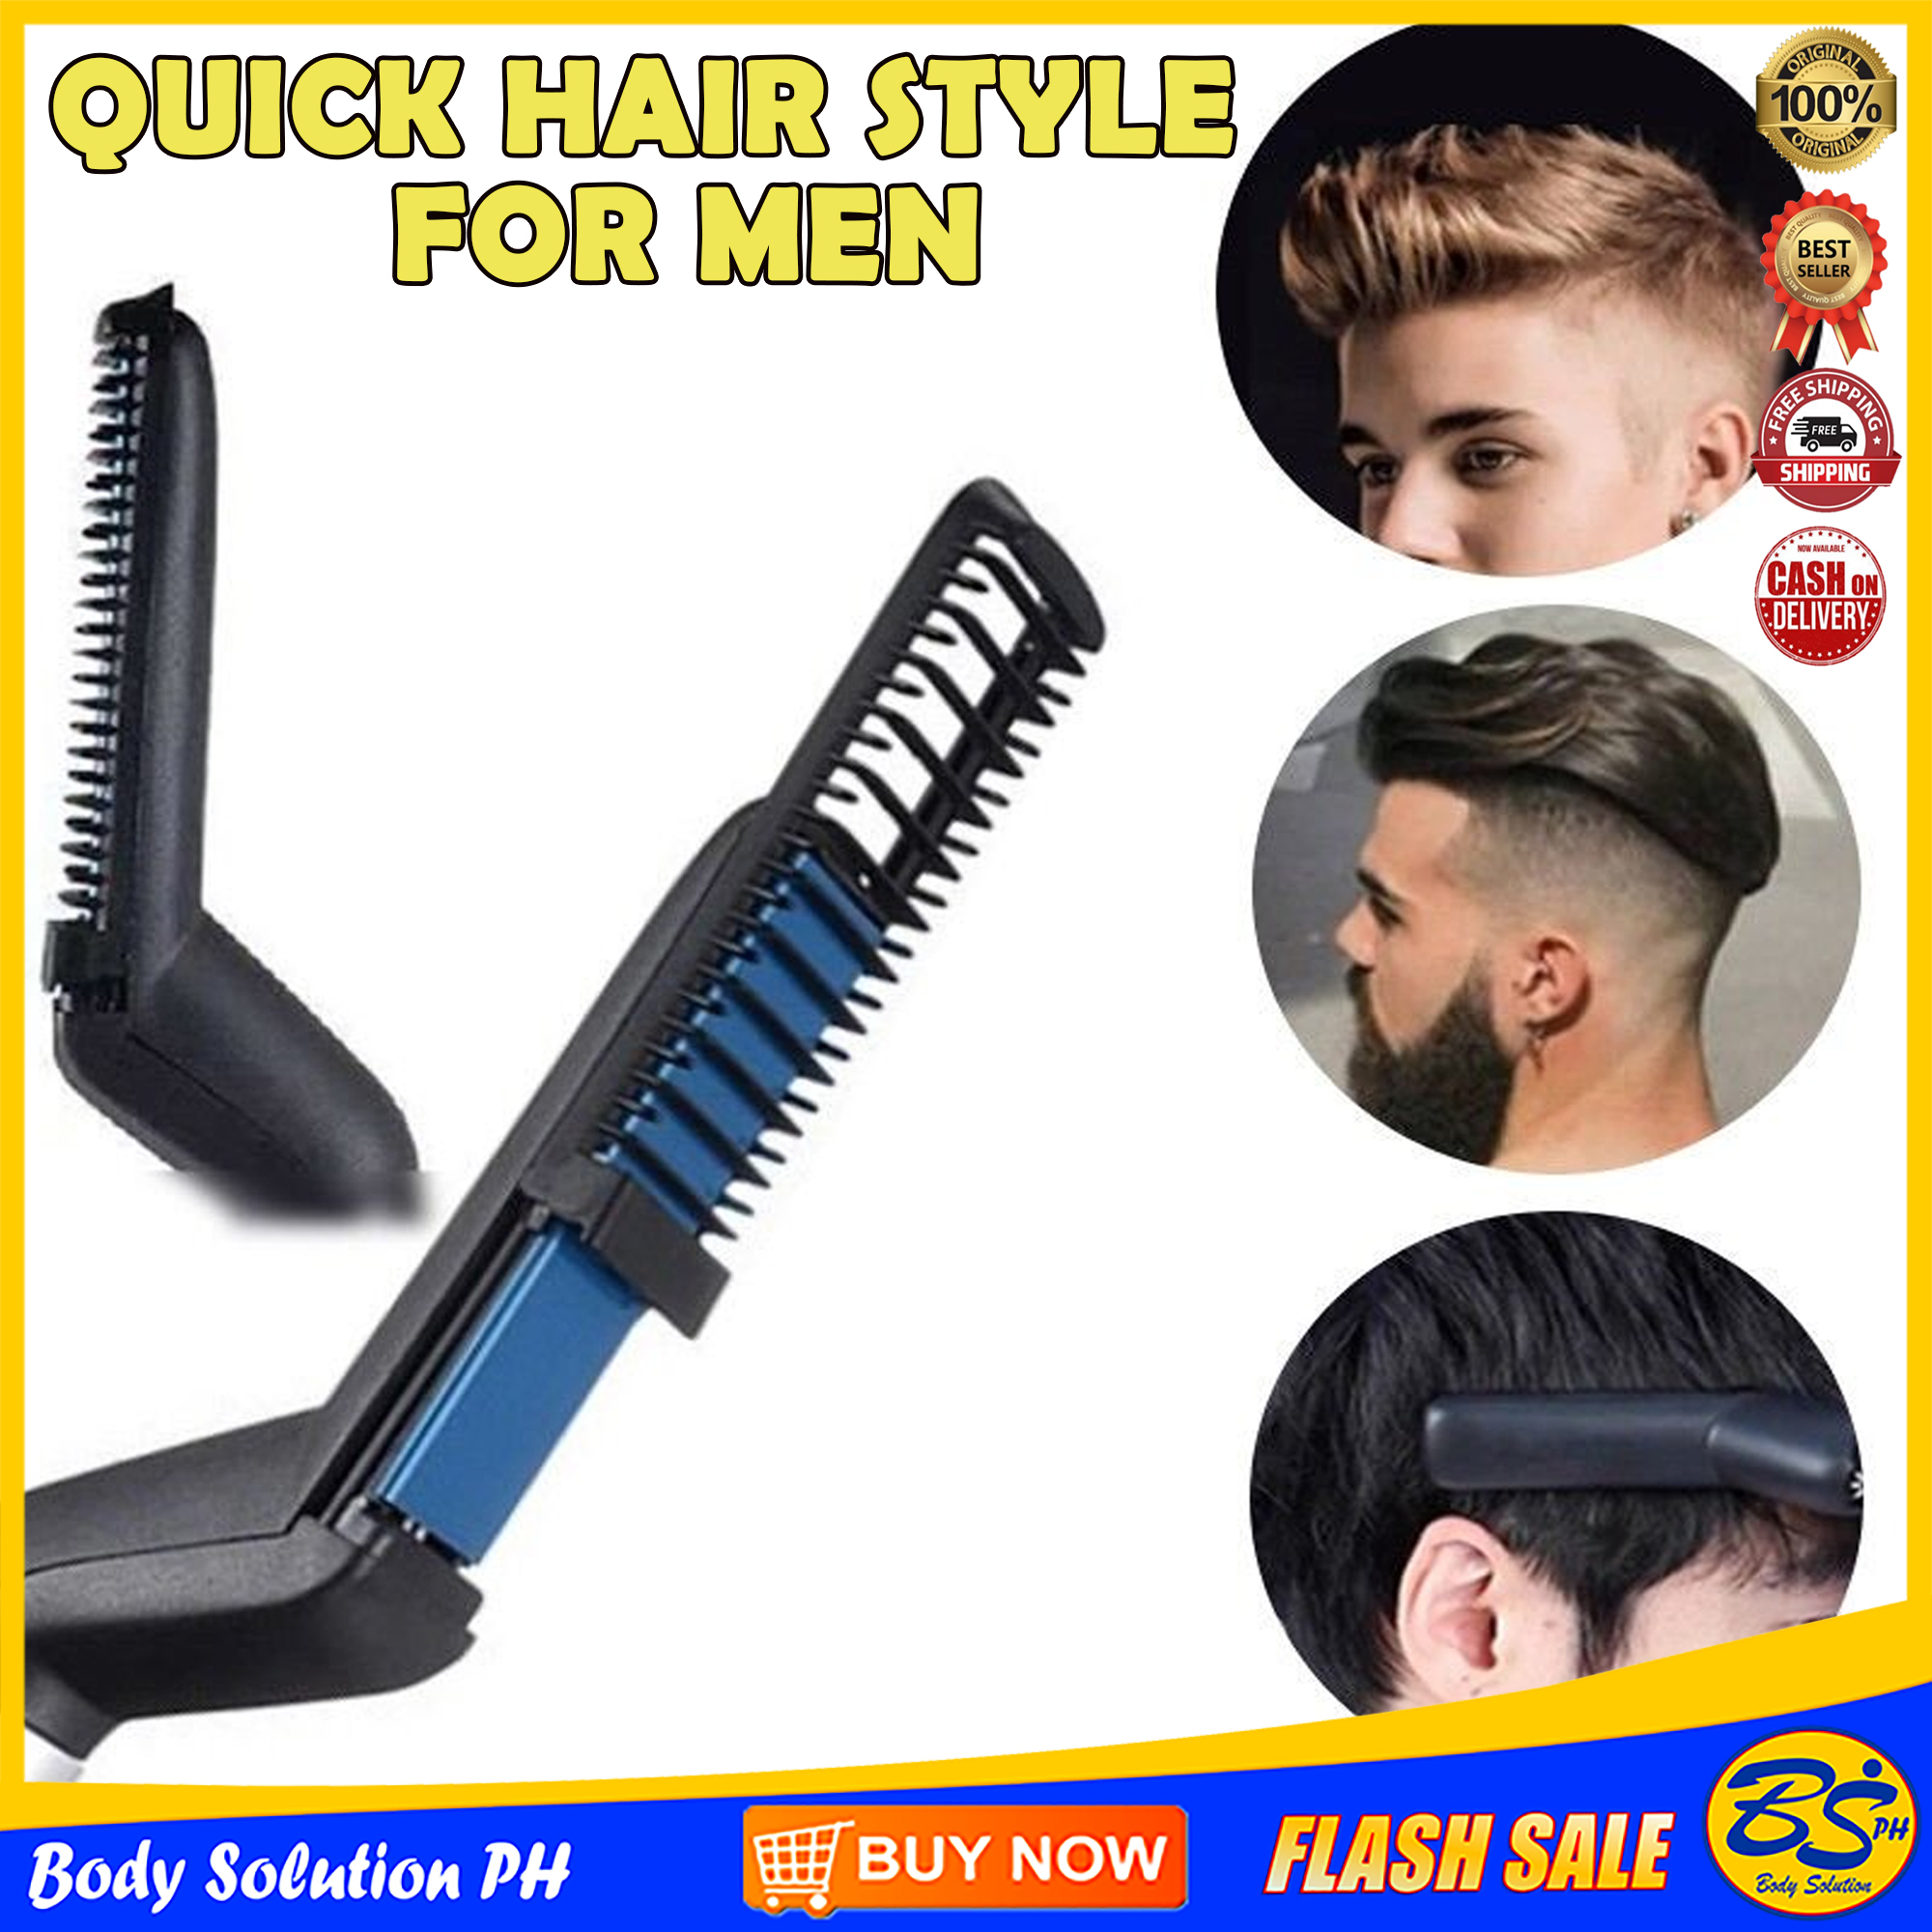 ORIGINAL QUICK HAIR STYLE FOR MEN , MULTIFUNCTIONAL HAIR COMB BRUSH, QUICK  STYLER FOR MEN, HAIR BRUSH FOR MEN, ELECTRIC HAIR STRAIGHTENER BRUSH, CURLY  HAIR STRAIGHTENING COMB, BEARD STRAIGHTENER , HAIR CURLER